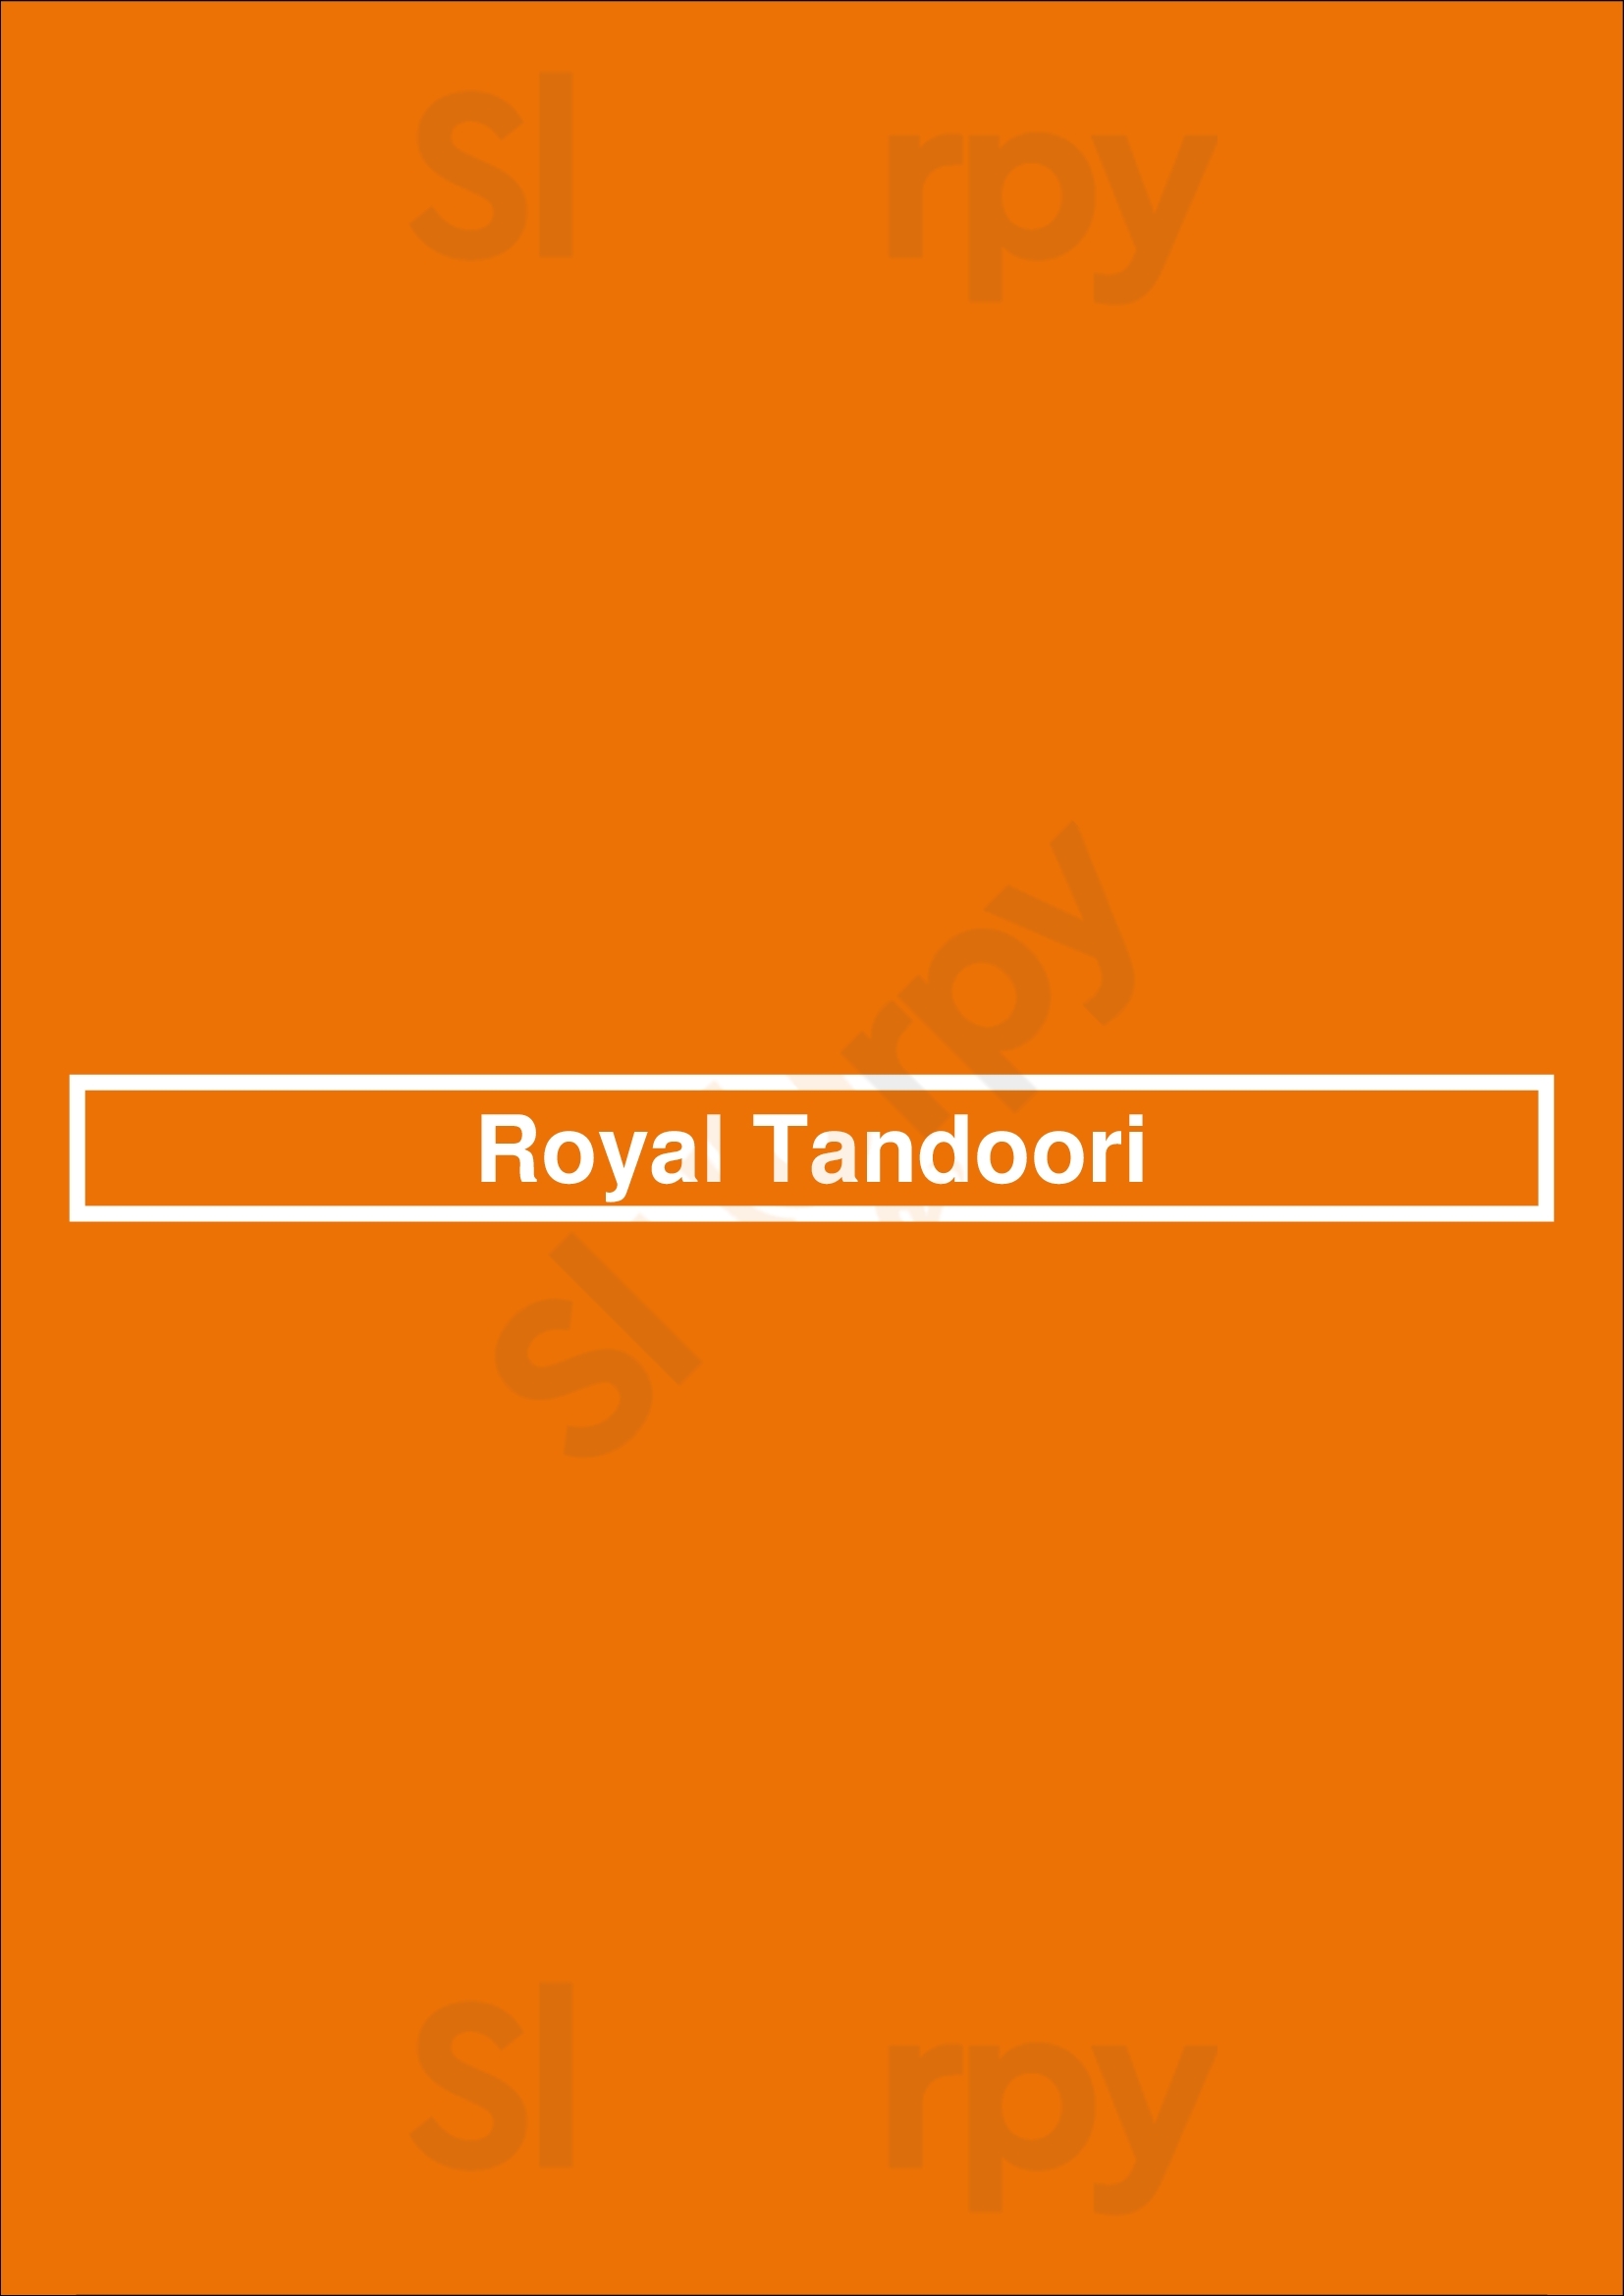 Royal Tandoori Barnsley Menu - 1